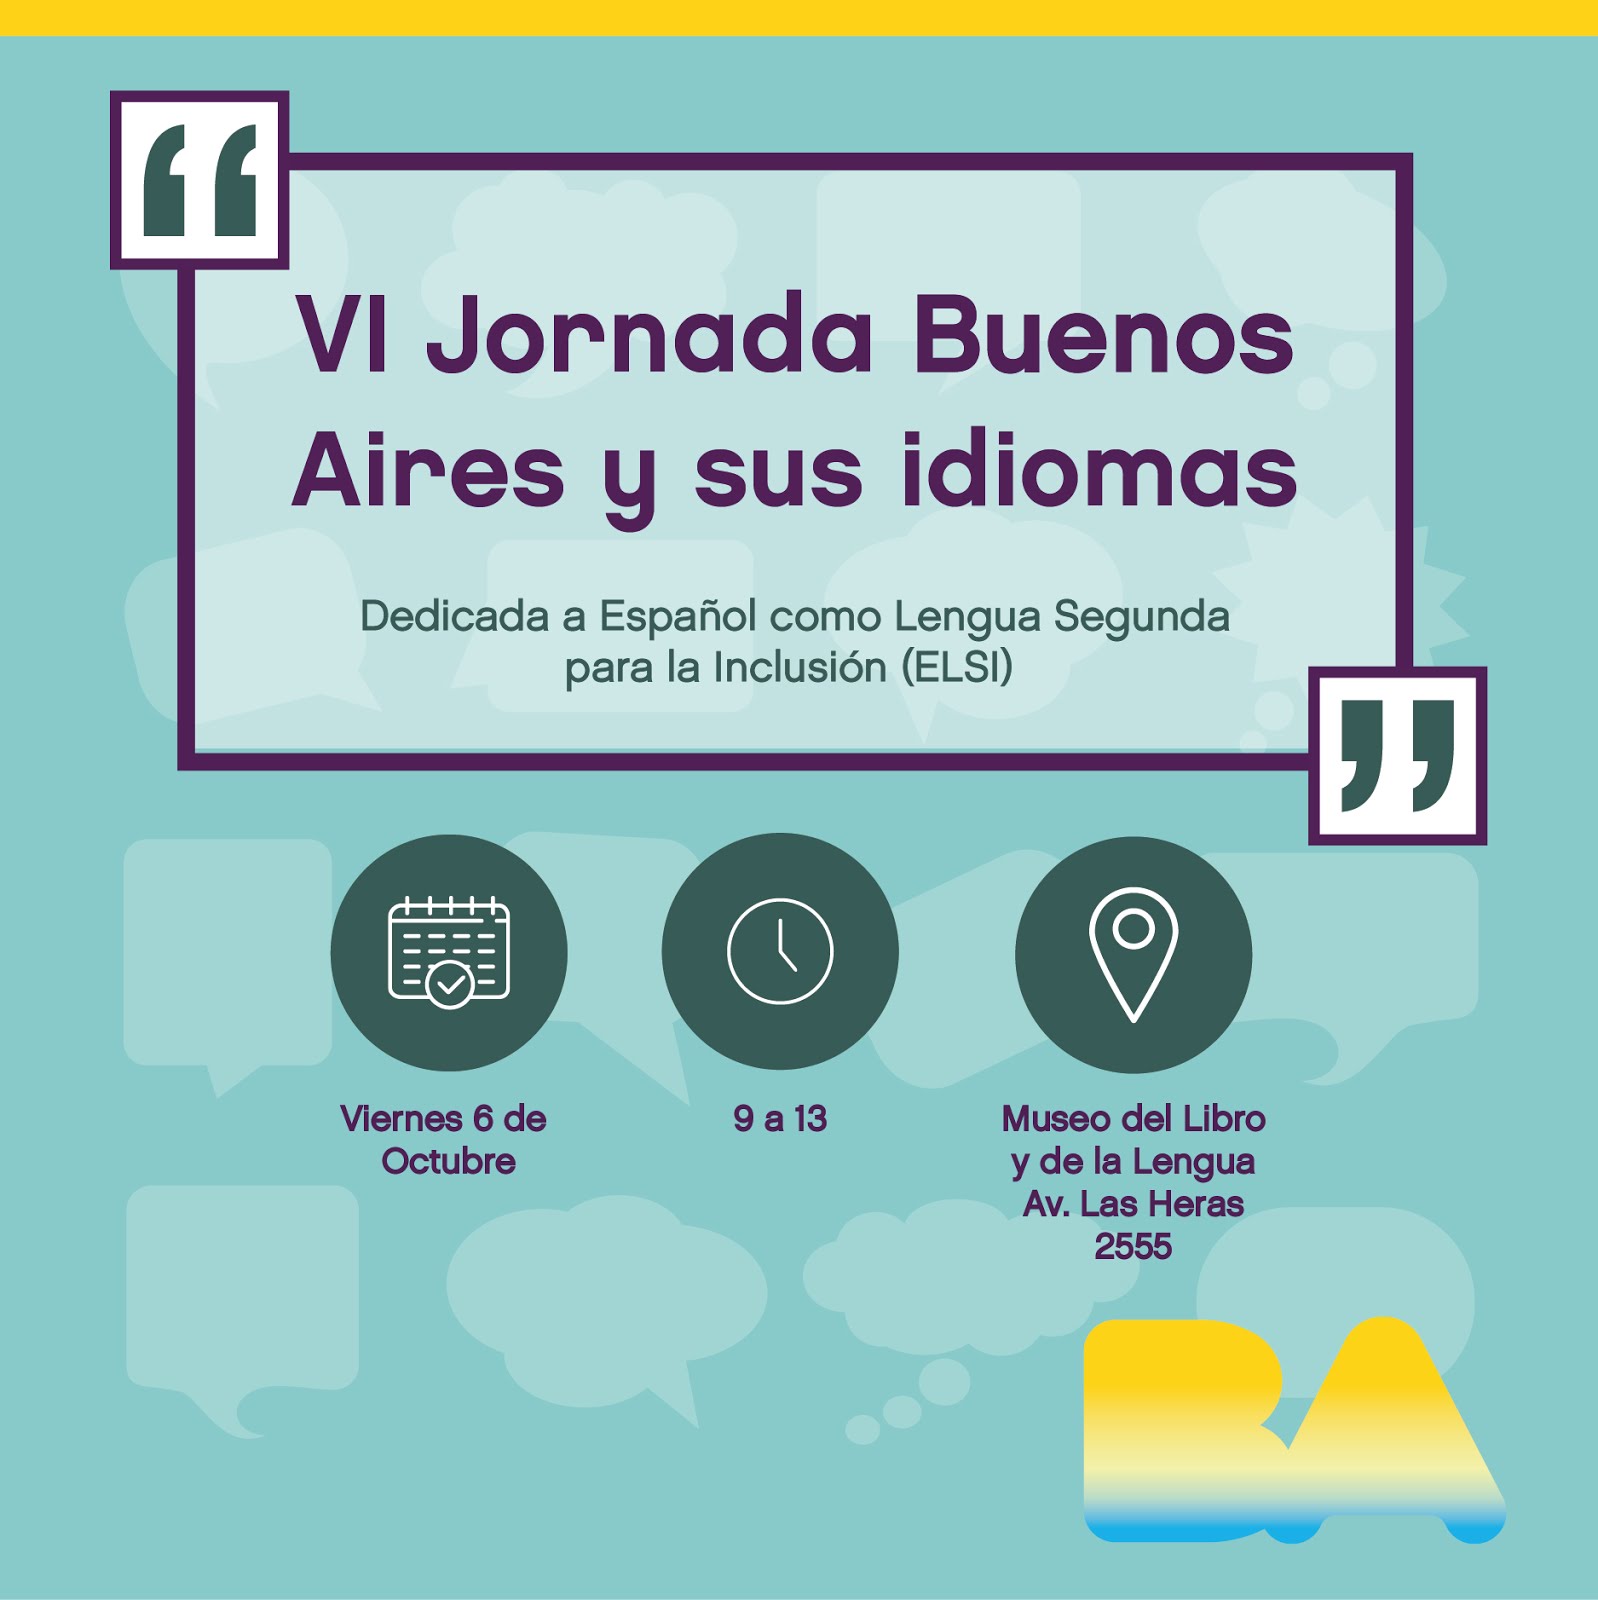 VI Jornada "Buenos Aires y sus Idiomas" 06/10/17